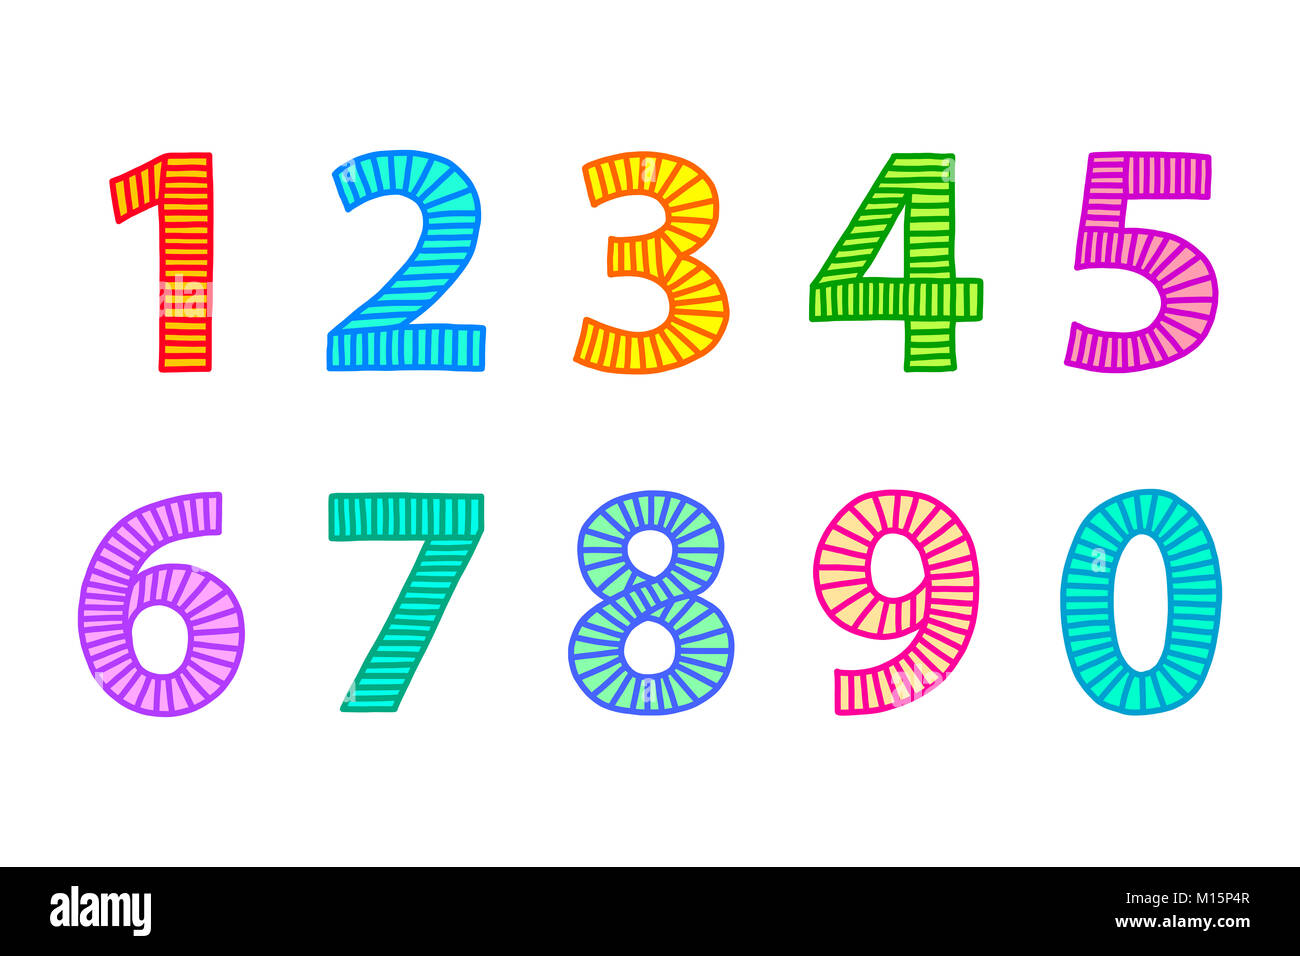 Mehrfarbige freehand Zahlen von eins bis null gezogen. Konturen mit Linien in gleichmäßigen Abständen, die ausgefüllt und mit passenden hellen Farben. Abbildung. Stockfoto